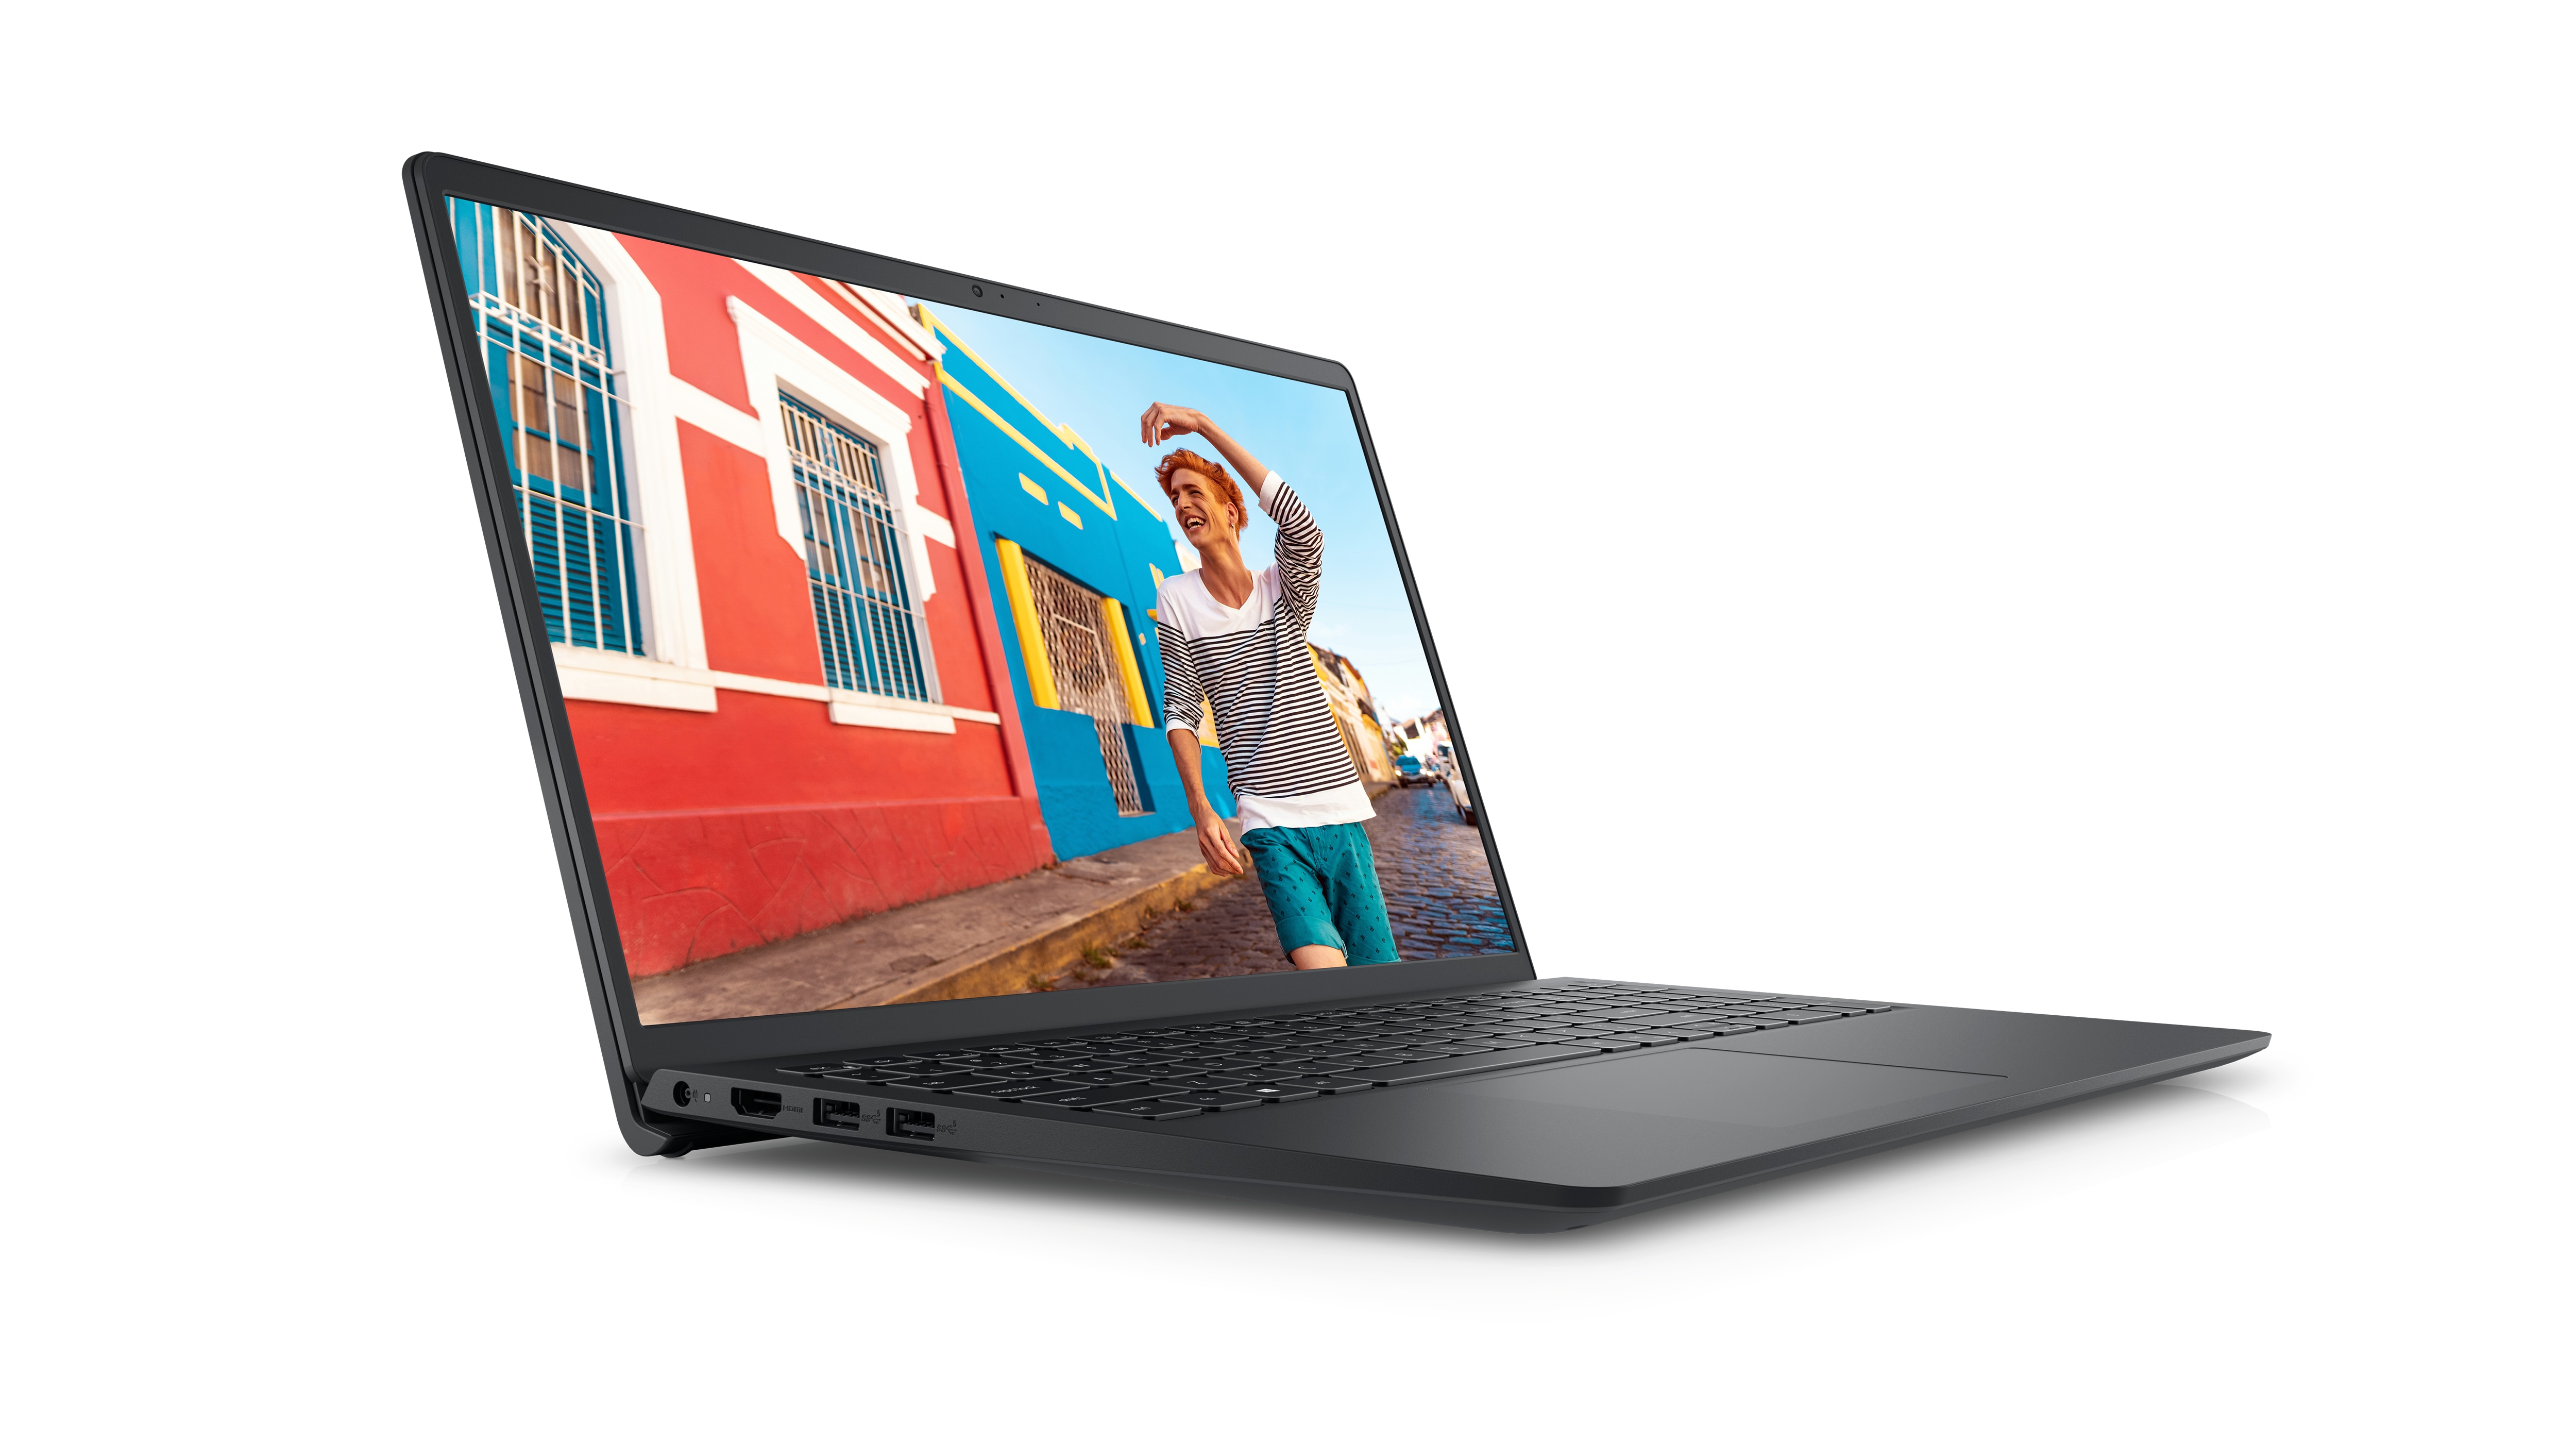 Bild eines Dell Laptops vom Typ Inspiron 15 3525 mit einem lächelnden Mann in einem schwarz-weißen Hemd vor einer farbenprächtigen Landschaft.